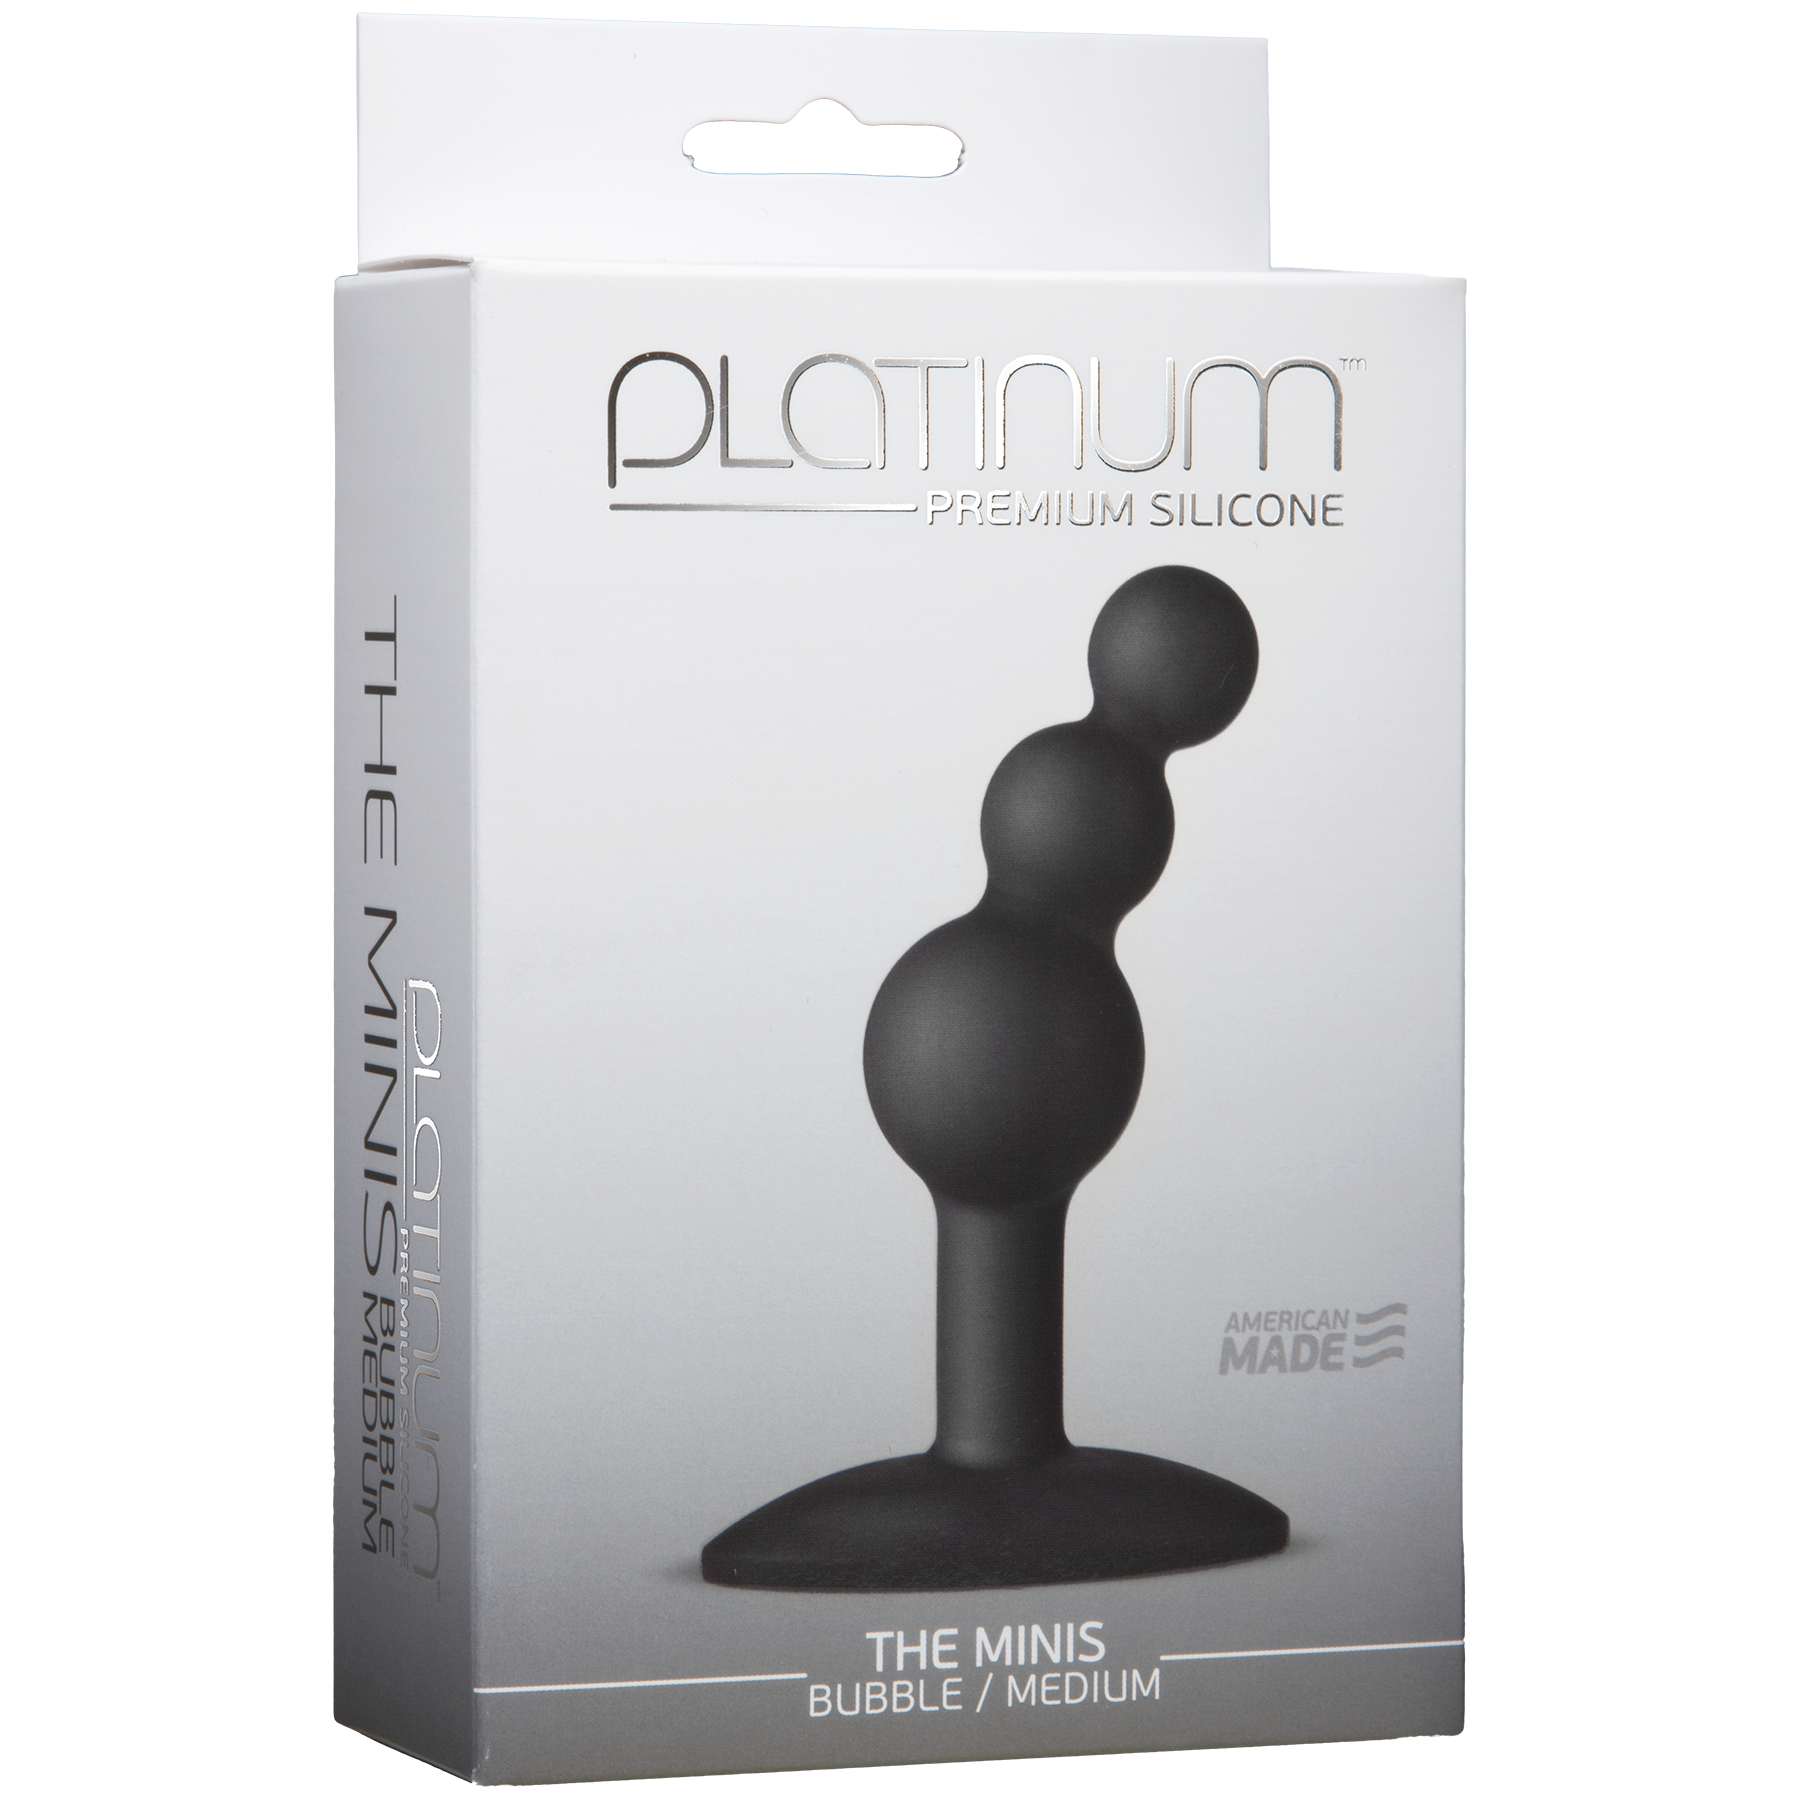 Platinum Premium Silicone The Mini's Bubble - Medium, Black - Thorn & Feather